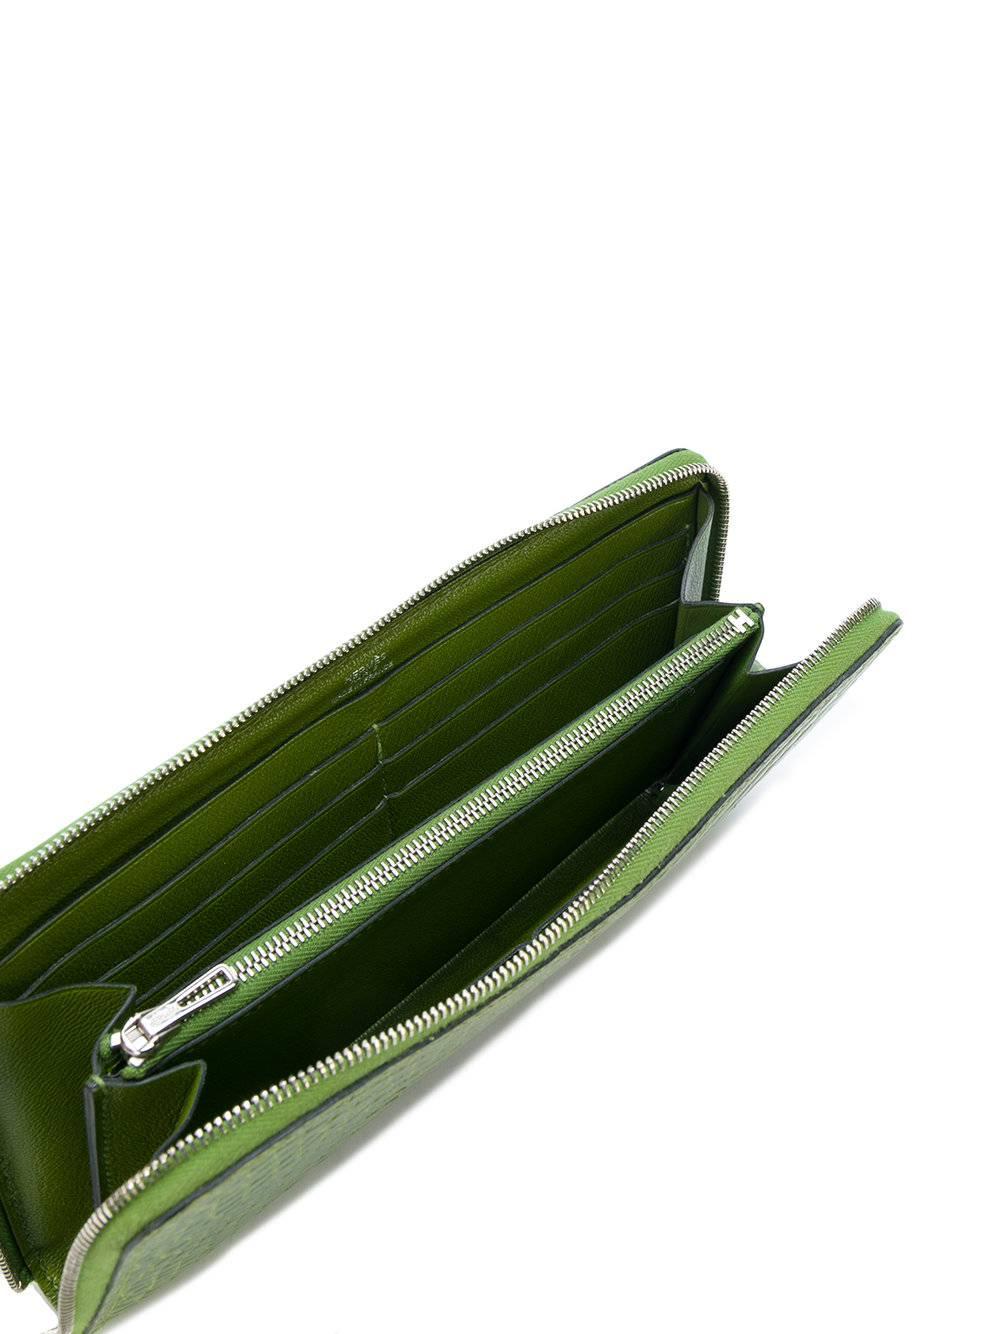 Diese elegante, leuchtend grüne Hermès-Brieftasche aus Krokodilleder mit Reißverschluss verfügt über mehrere Kartenfächer im Inneren und ein internes Reißverschlussfach.

Farbe: Grün

Zusammenstellung: 100% Krokodilleder

Abmessungen: Tiefe: 2 cm,